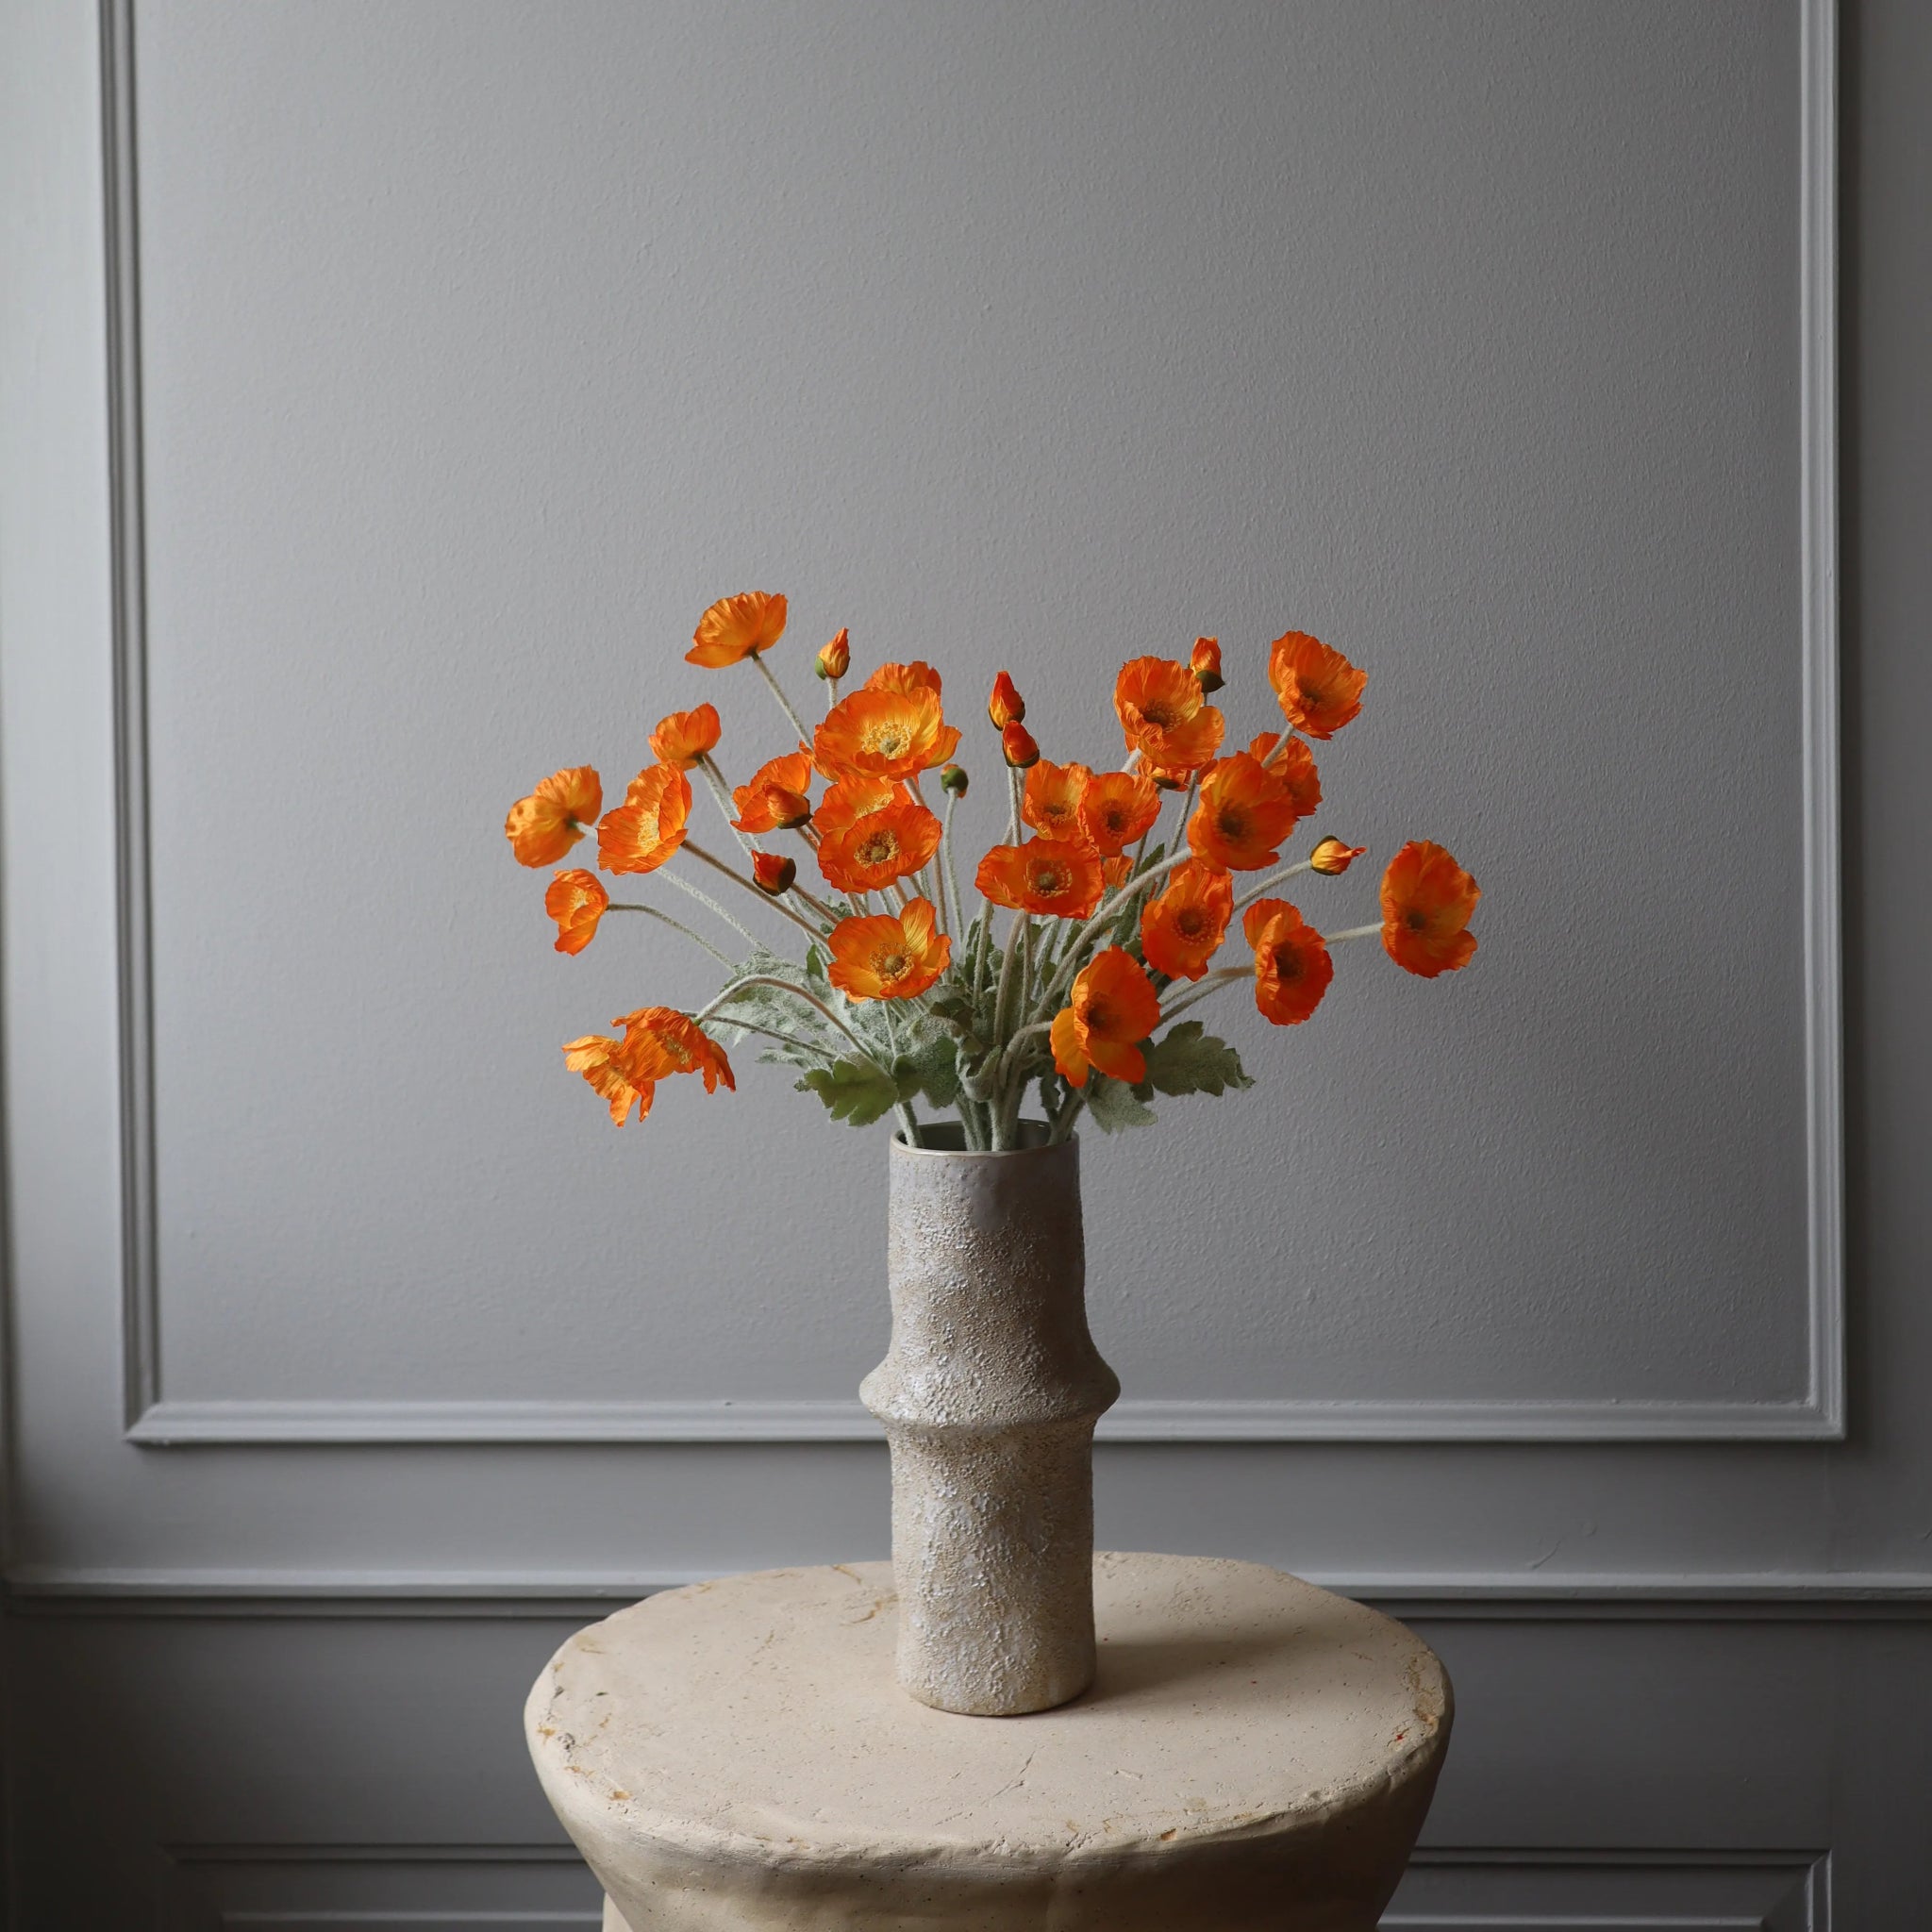 Poppy Flower in Light Orange from Botané